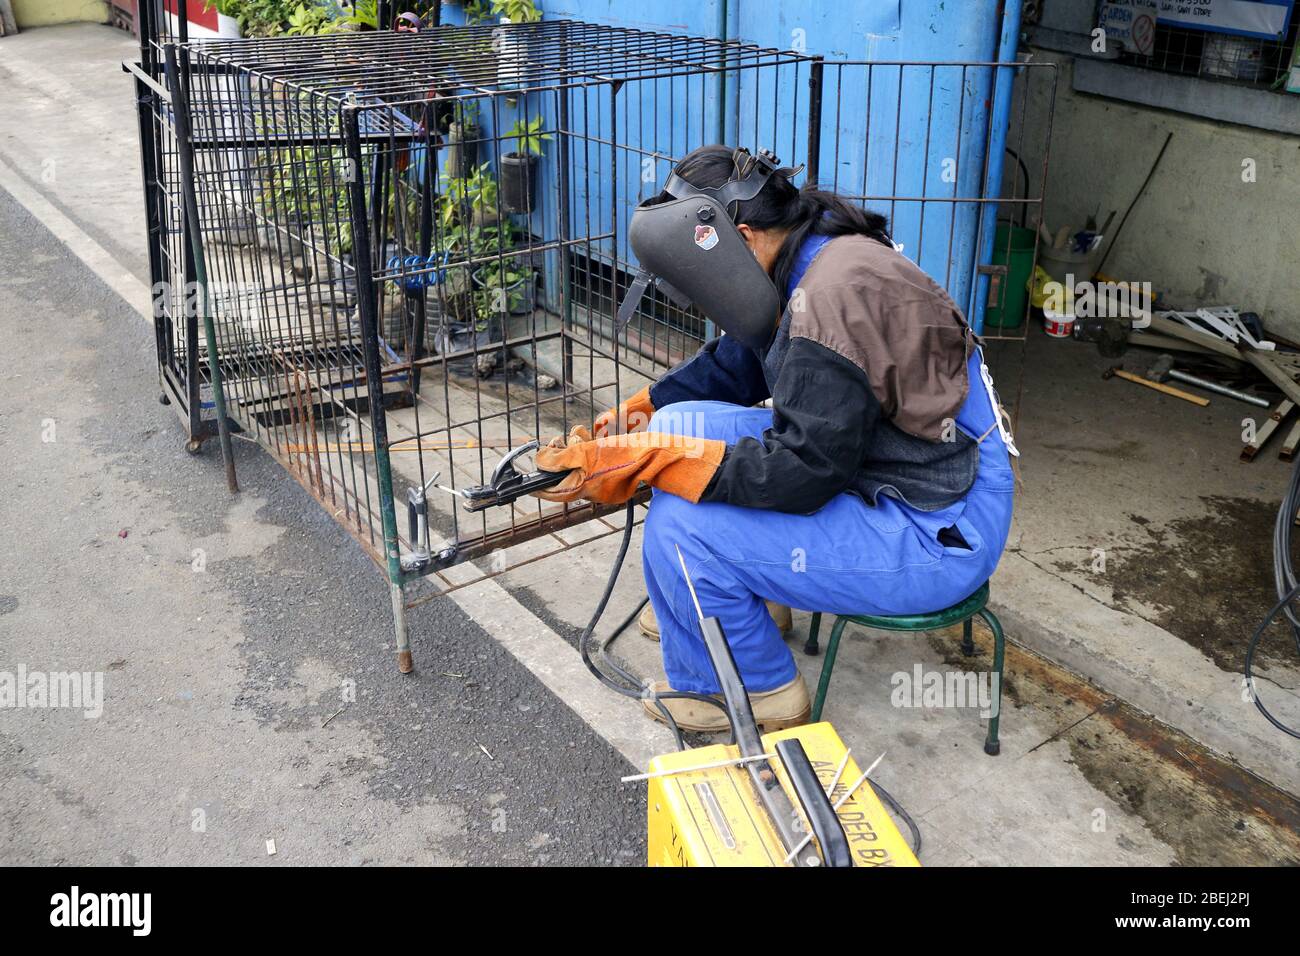 Antipolo City, Philippines - 13 avril 2020: Un travailleur qualifié a soudé des barres de fer ensemble pour former une cage de chien. Banque D'Images